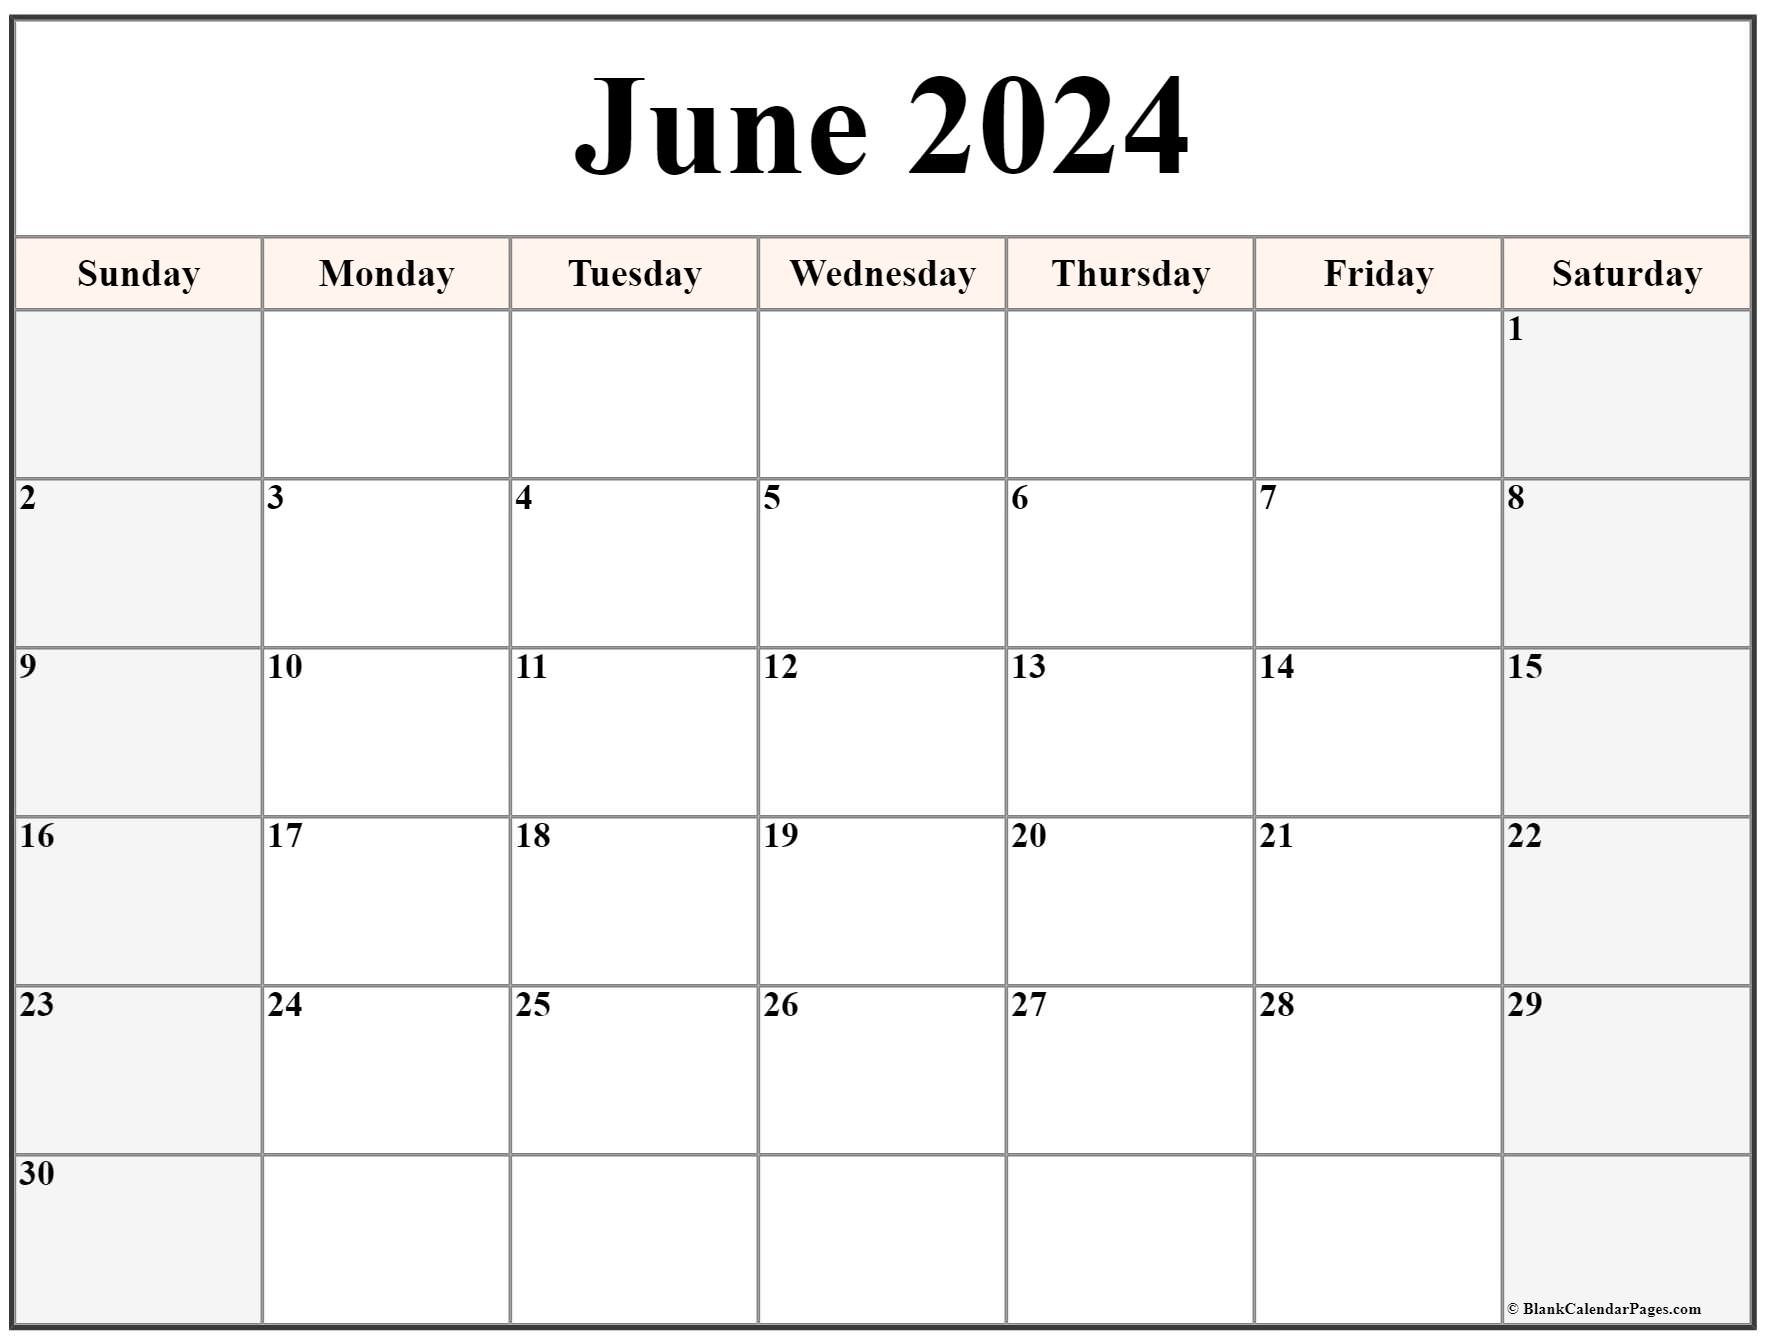 Free Printable Calendar June 2022 June 2022 Calendar | Free Printable Calendar Templates